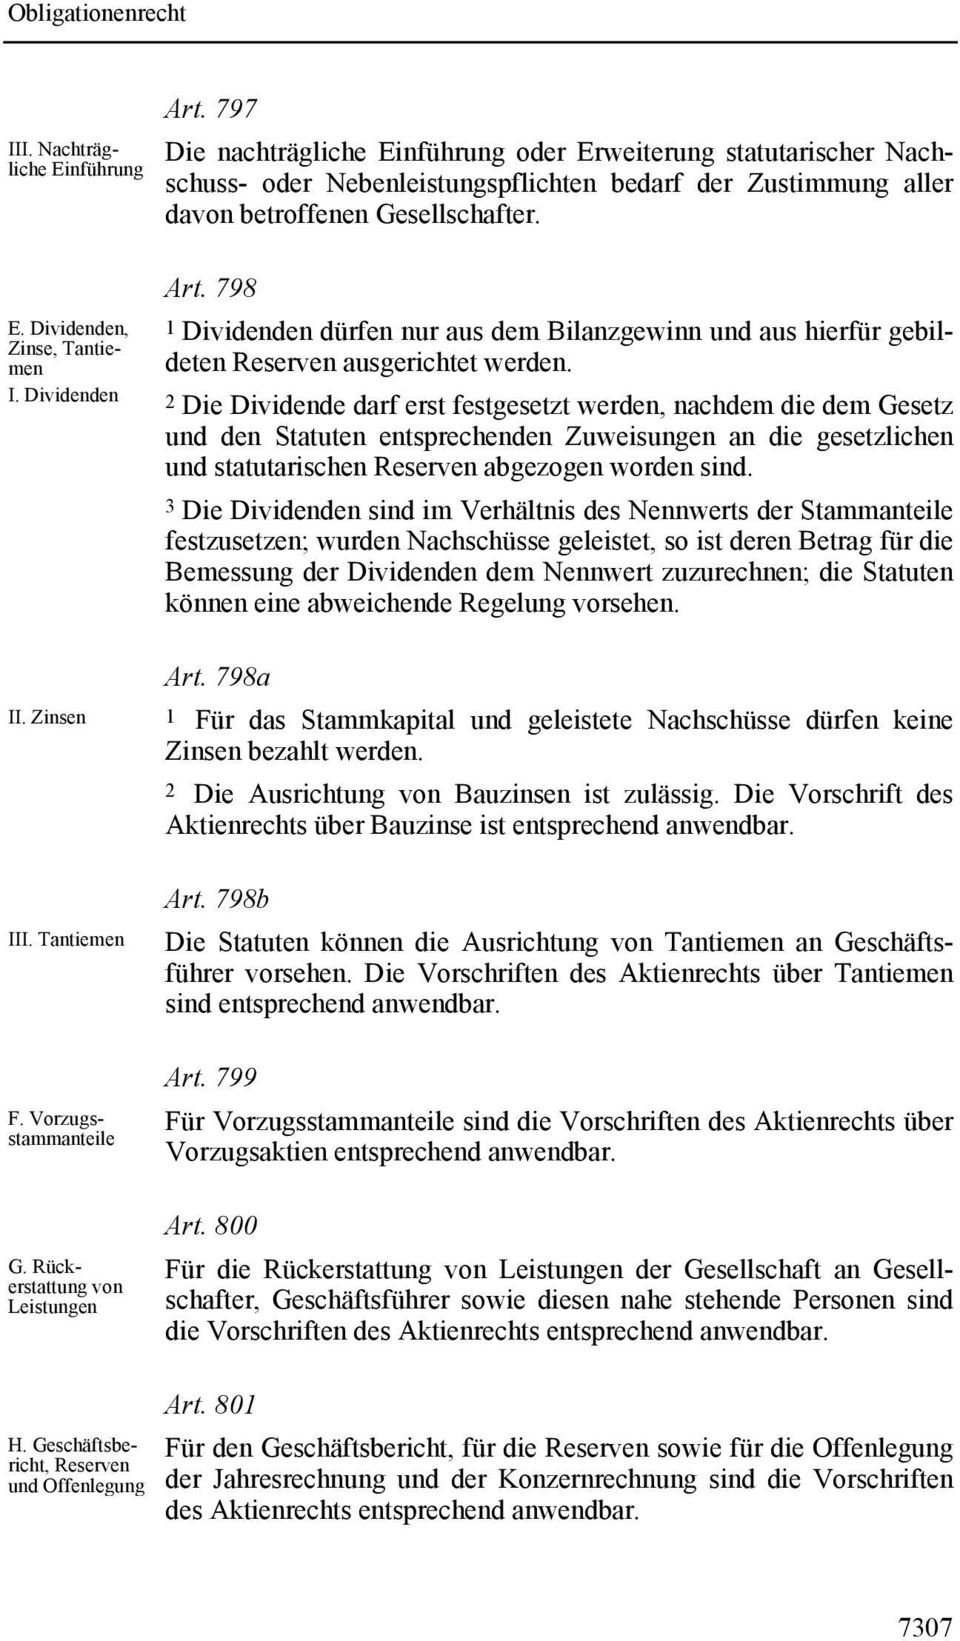 Dividenden II. Zinsen III. Tantiemen F. Vorzugsstammanteile G. Rückerstattung von Leistungen Art.